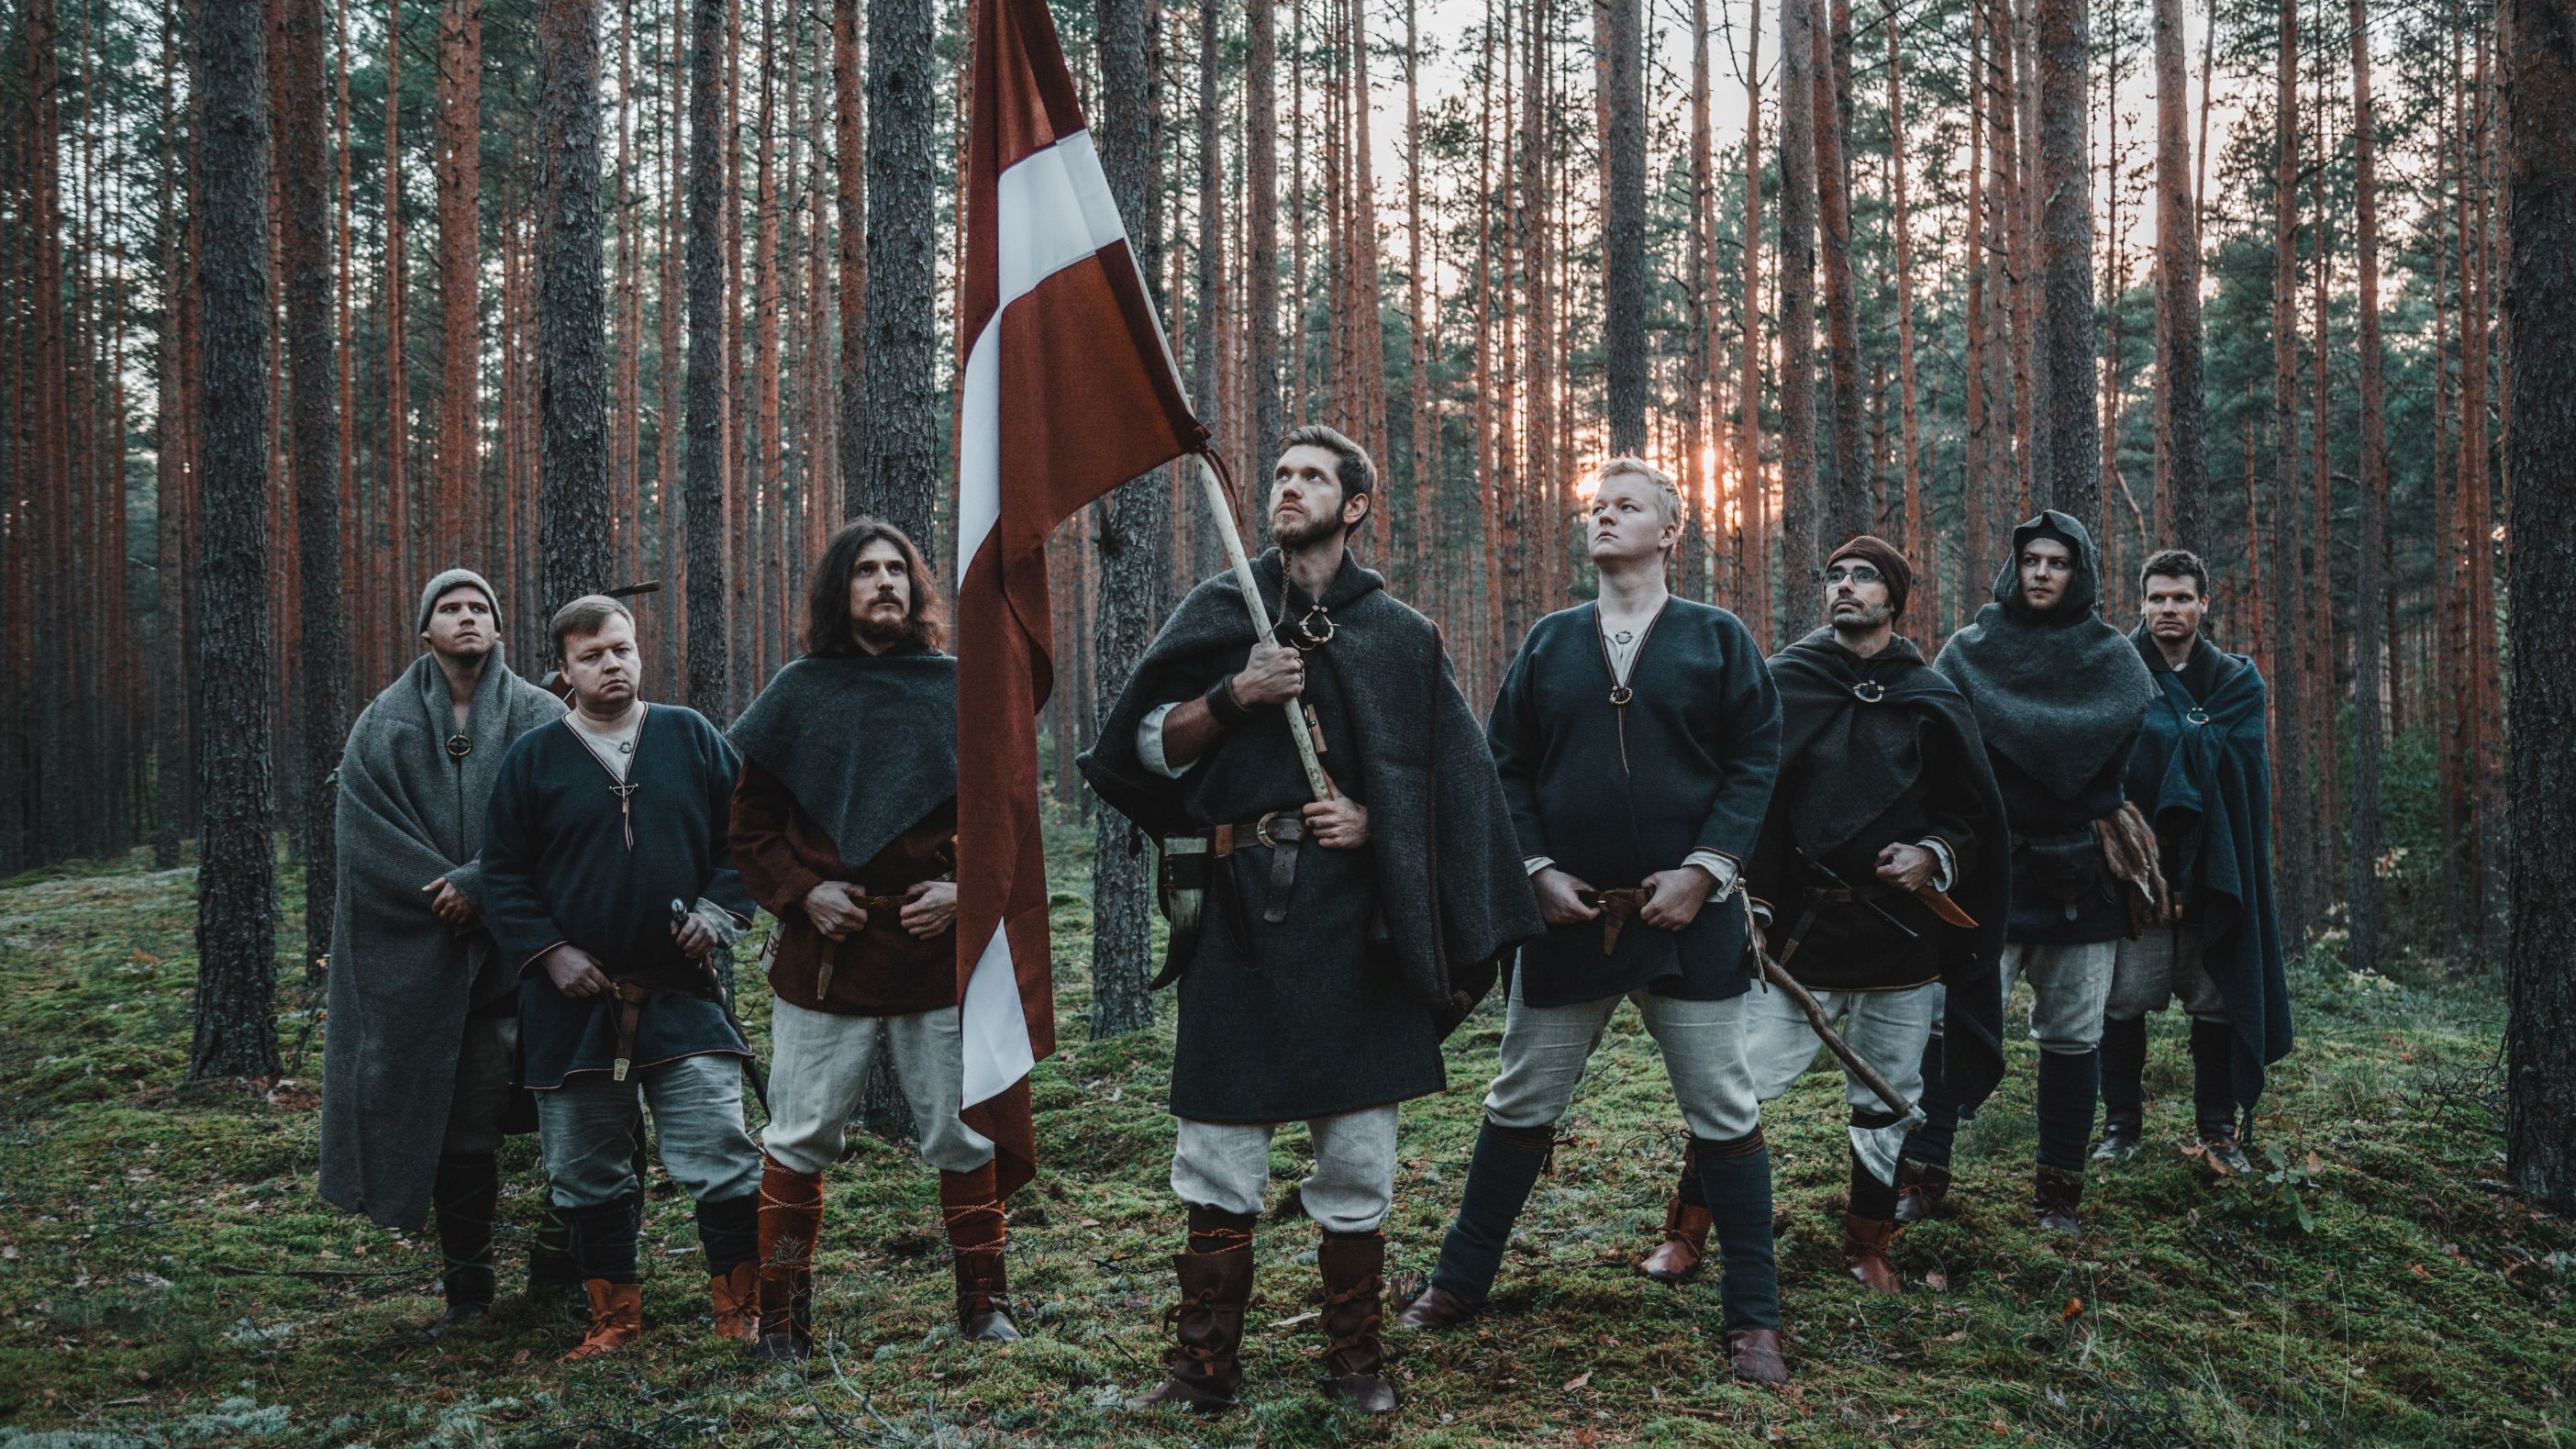 Lāčplēša dienā aicina uz koncertu “Spēka dziesmas” ar Rīgas folkloras kopu un rokgrupas “Līvi” piedalīšanos